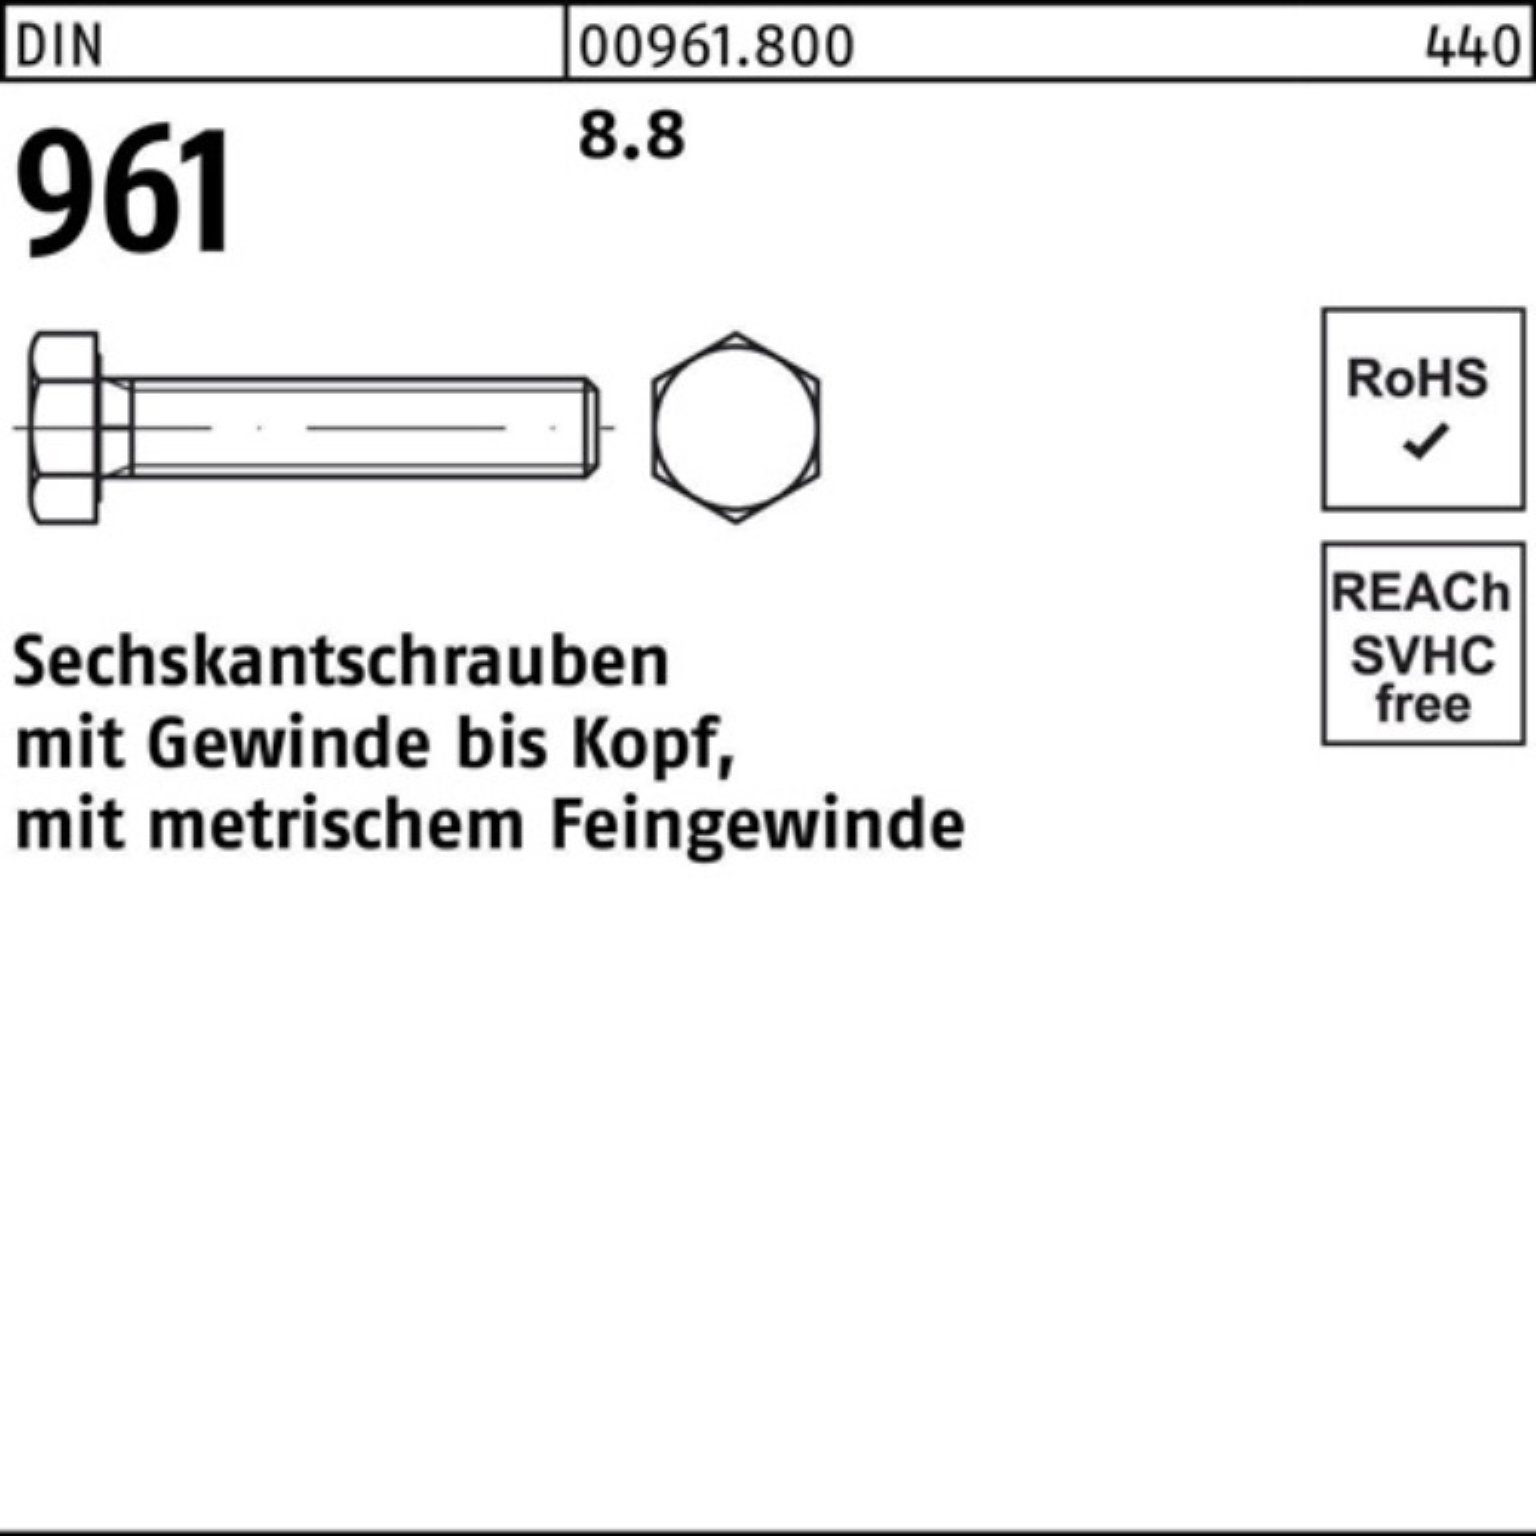 Reyher Sechskantschraube 100er Pack Sechskantschraube 961 DIN DIN 1 VG Stück M42x3x200 8.8 961